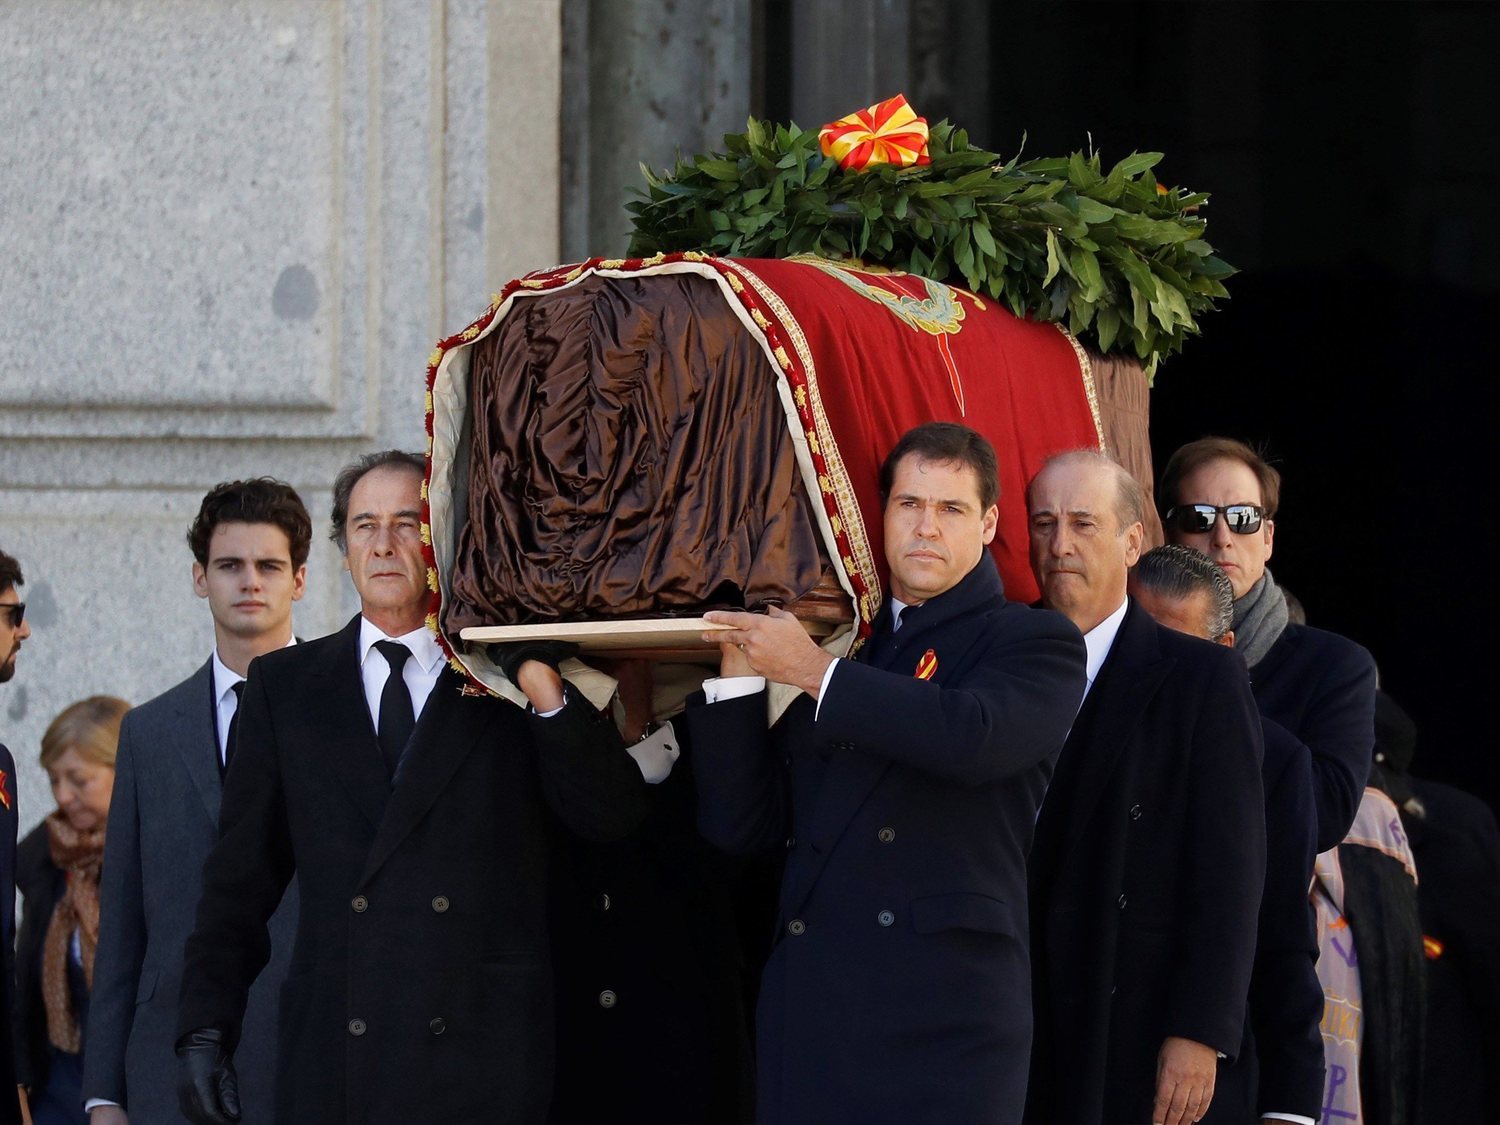 La familia Franco irá al Tribunal Europeo de Derechos Humanos para volver a exhumar al dictador